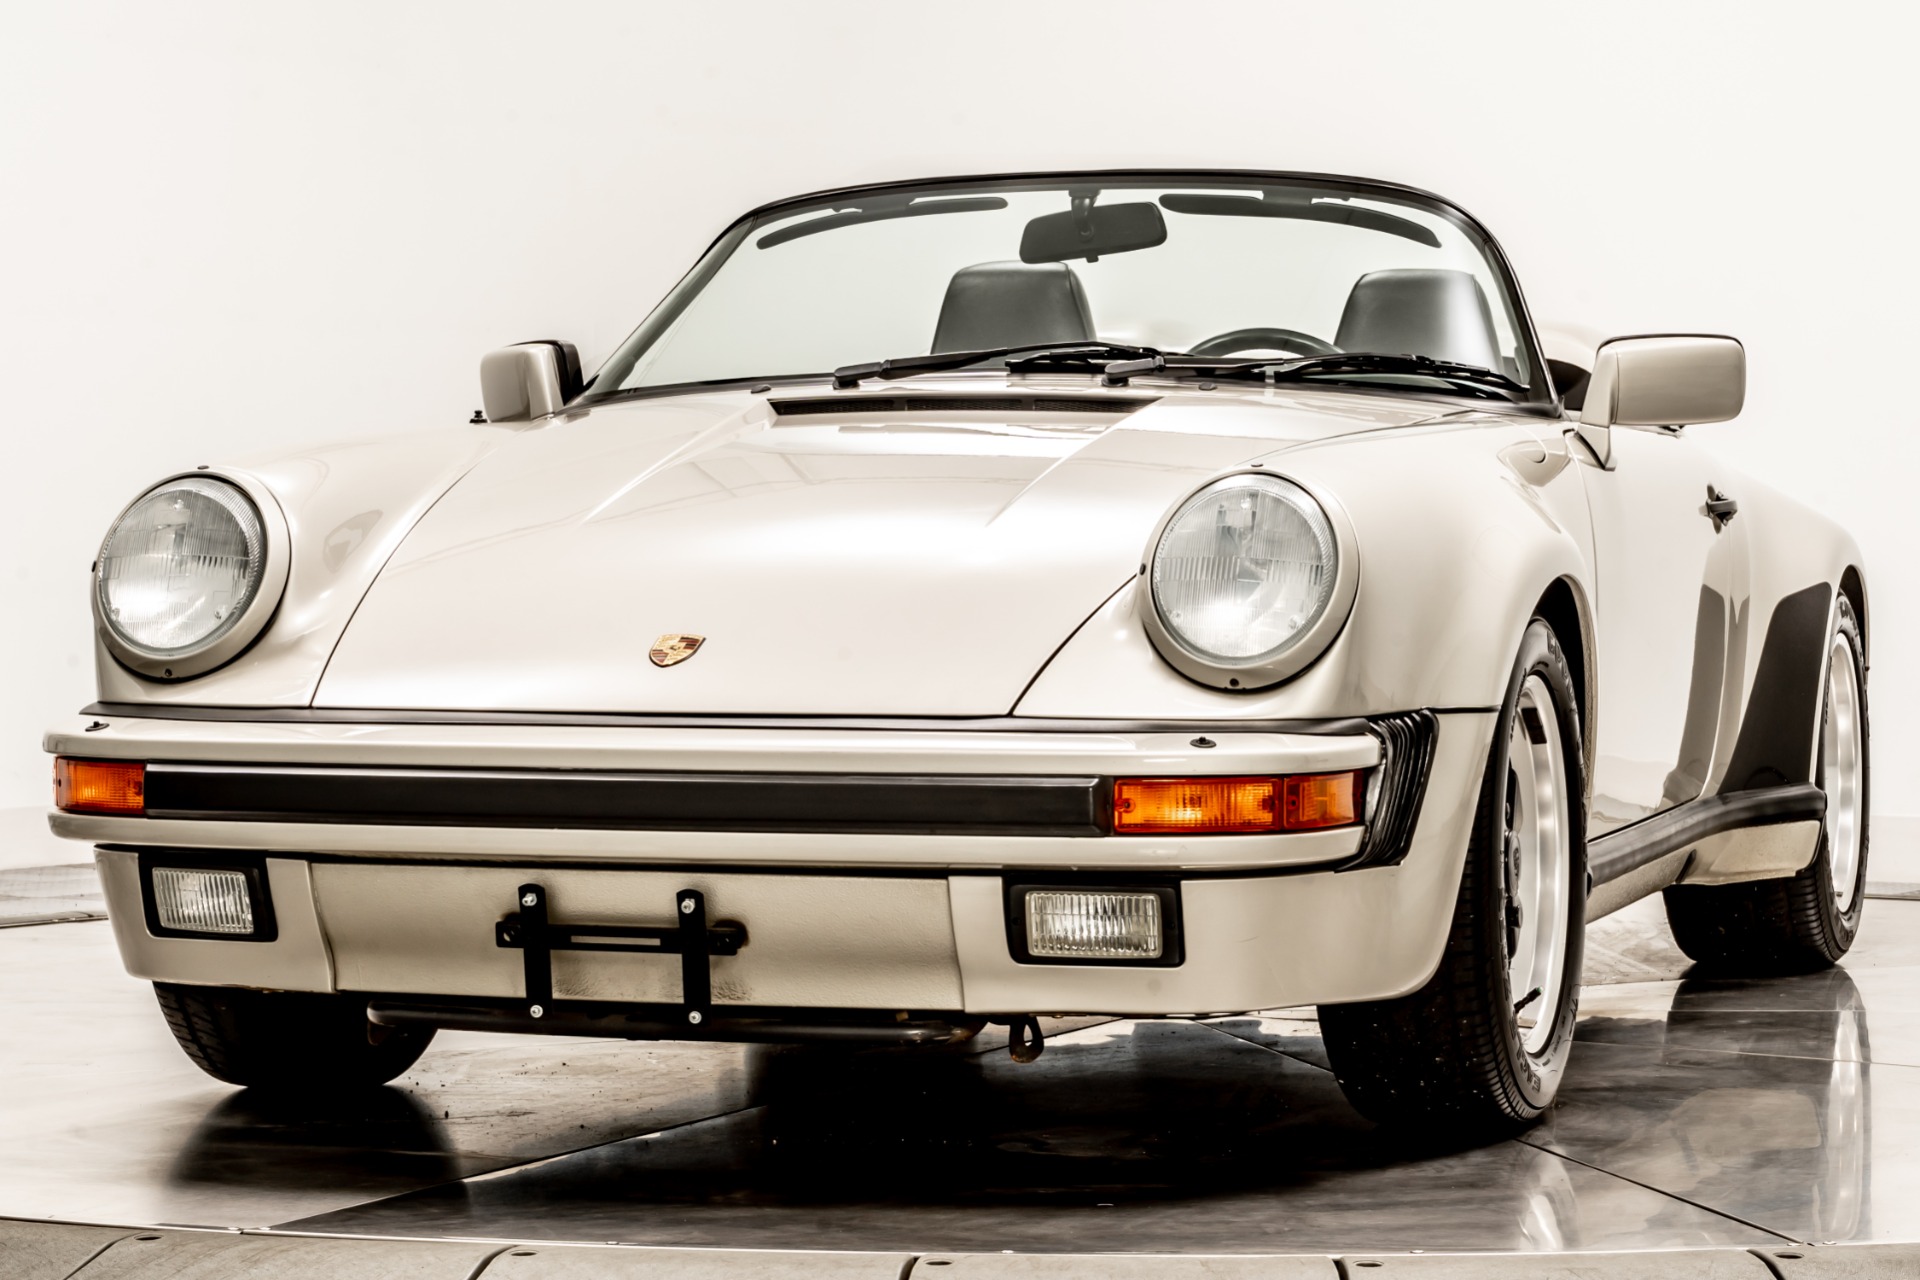 Used 1989 Porsche 911 Speedster For Sale (Sold) | Marshall Goldman 